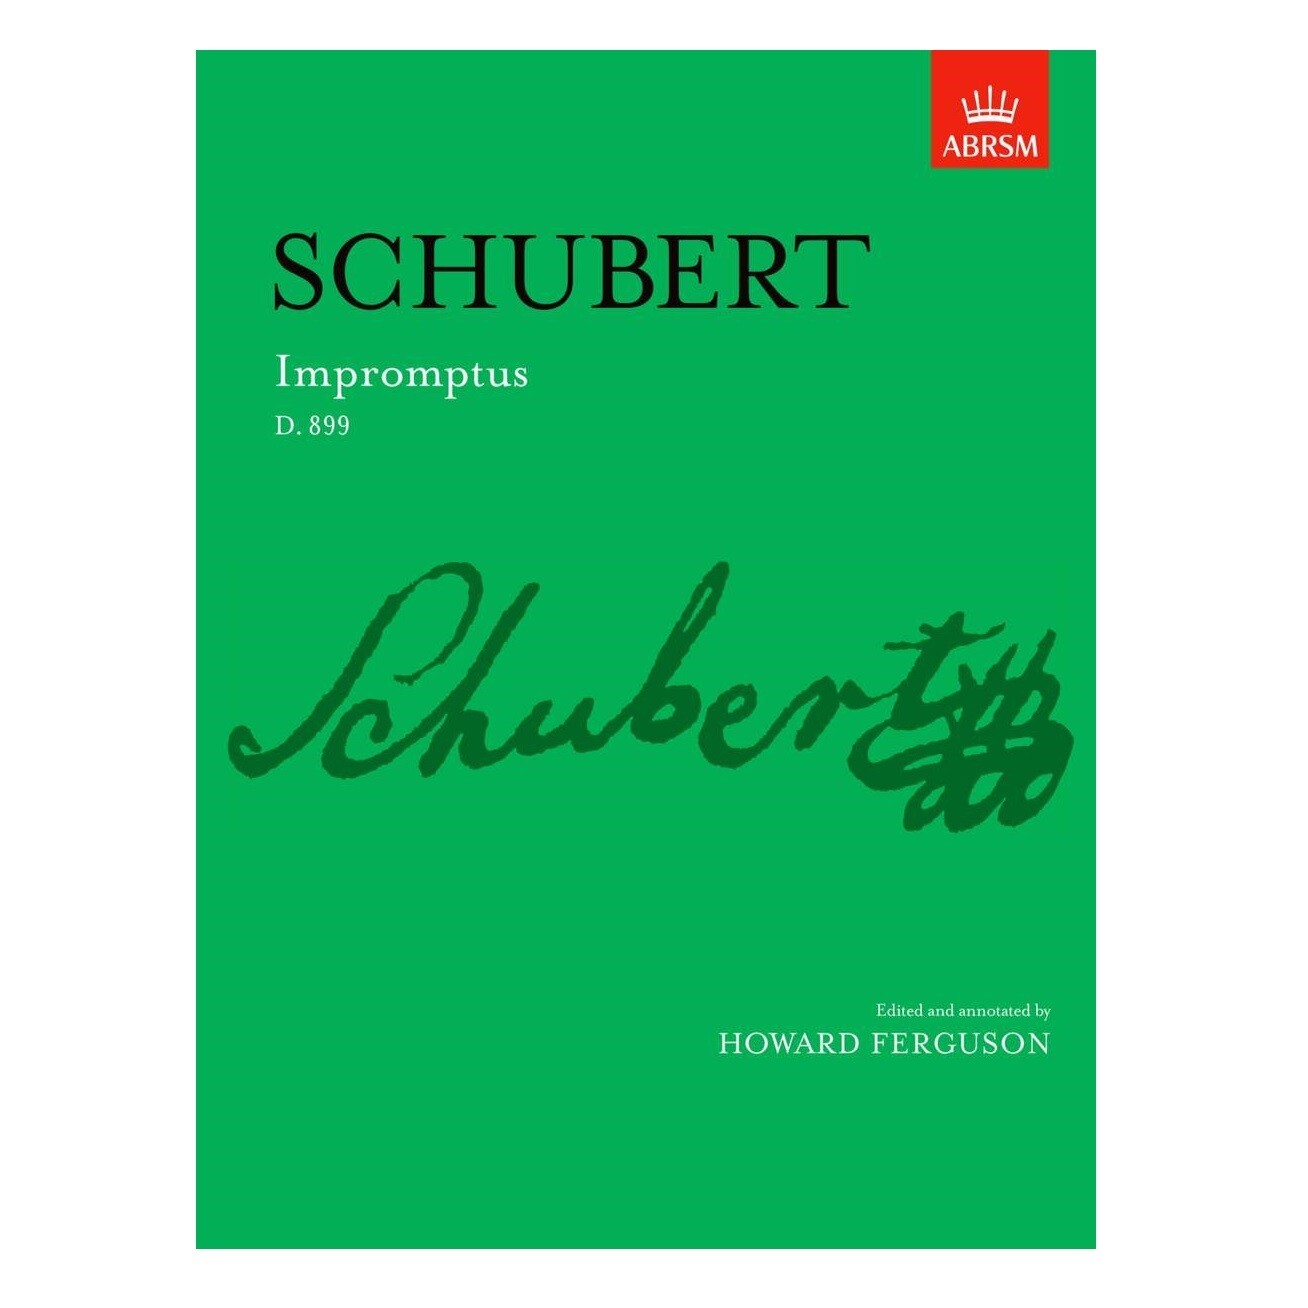 Schubert Impromptus D.899